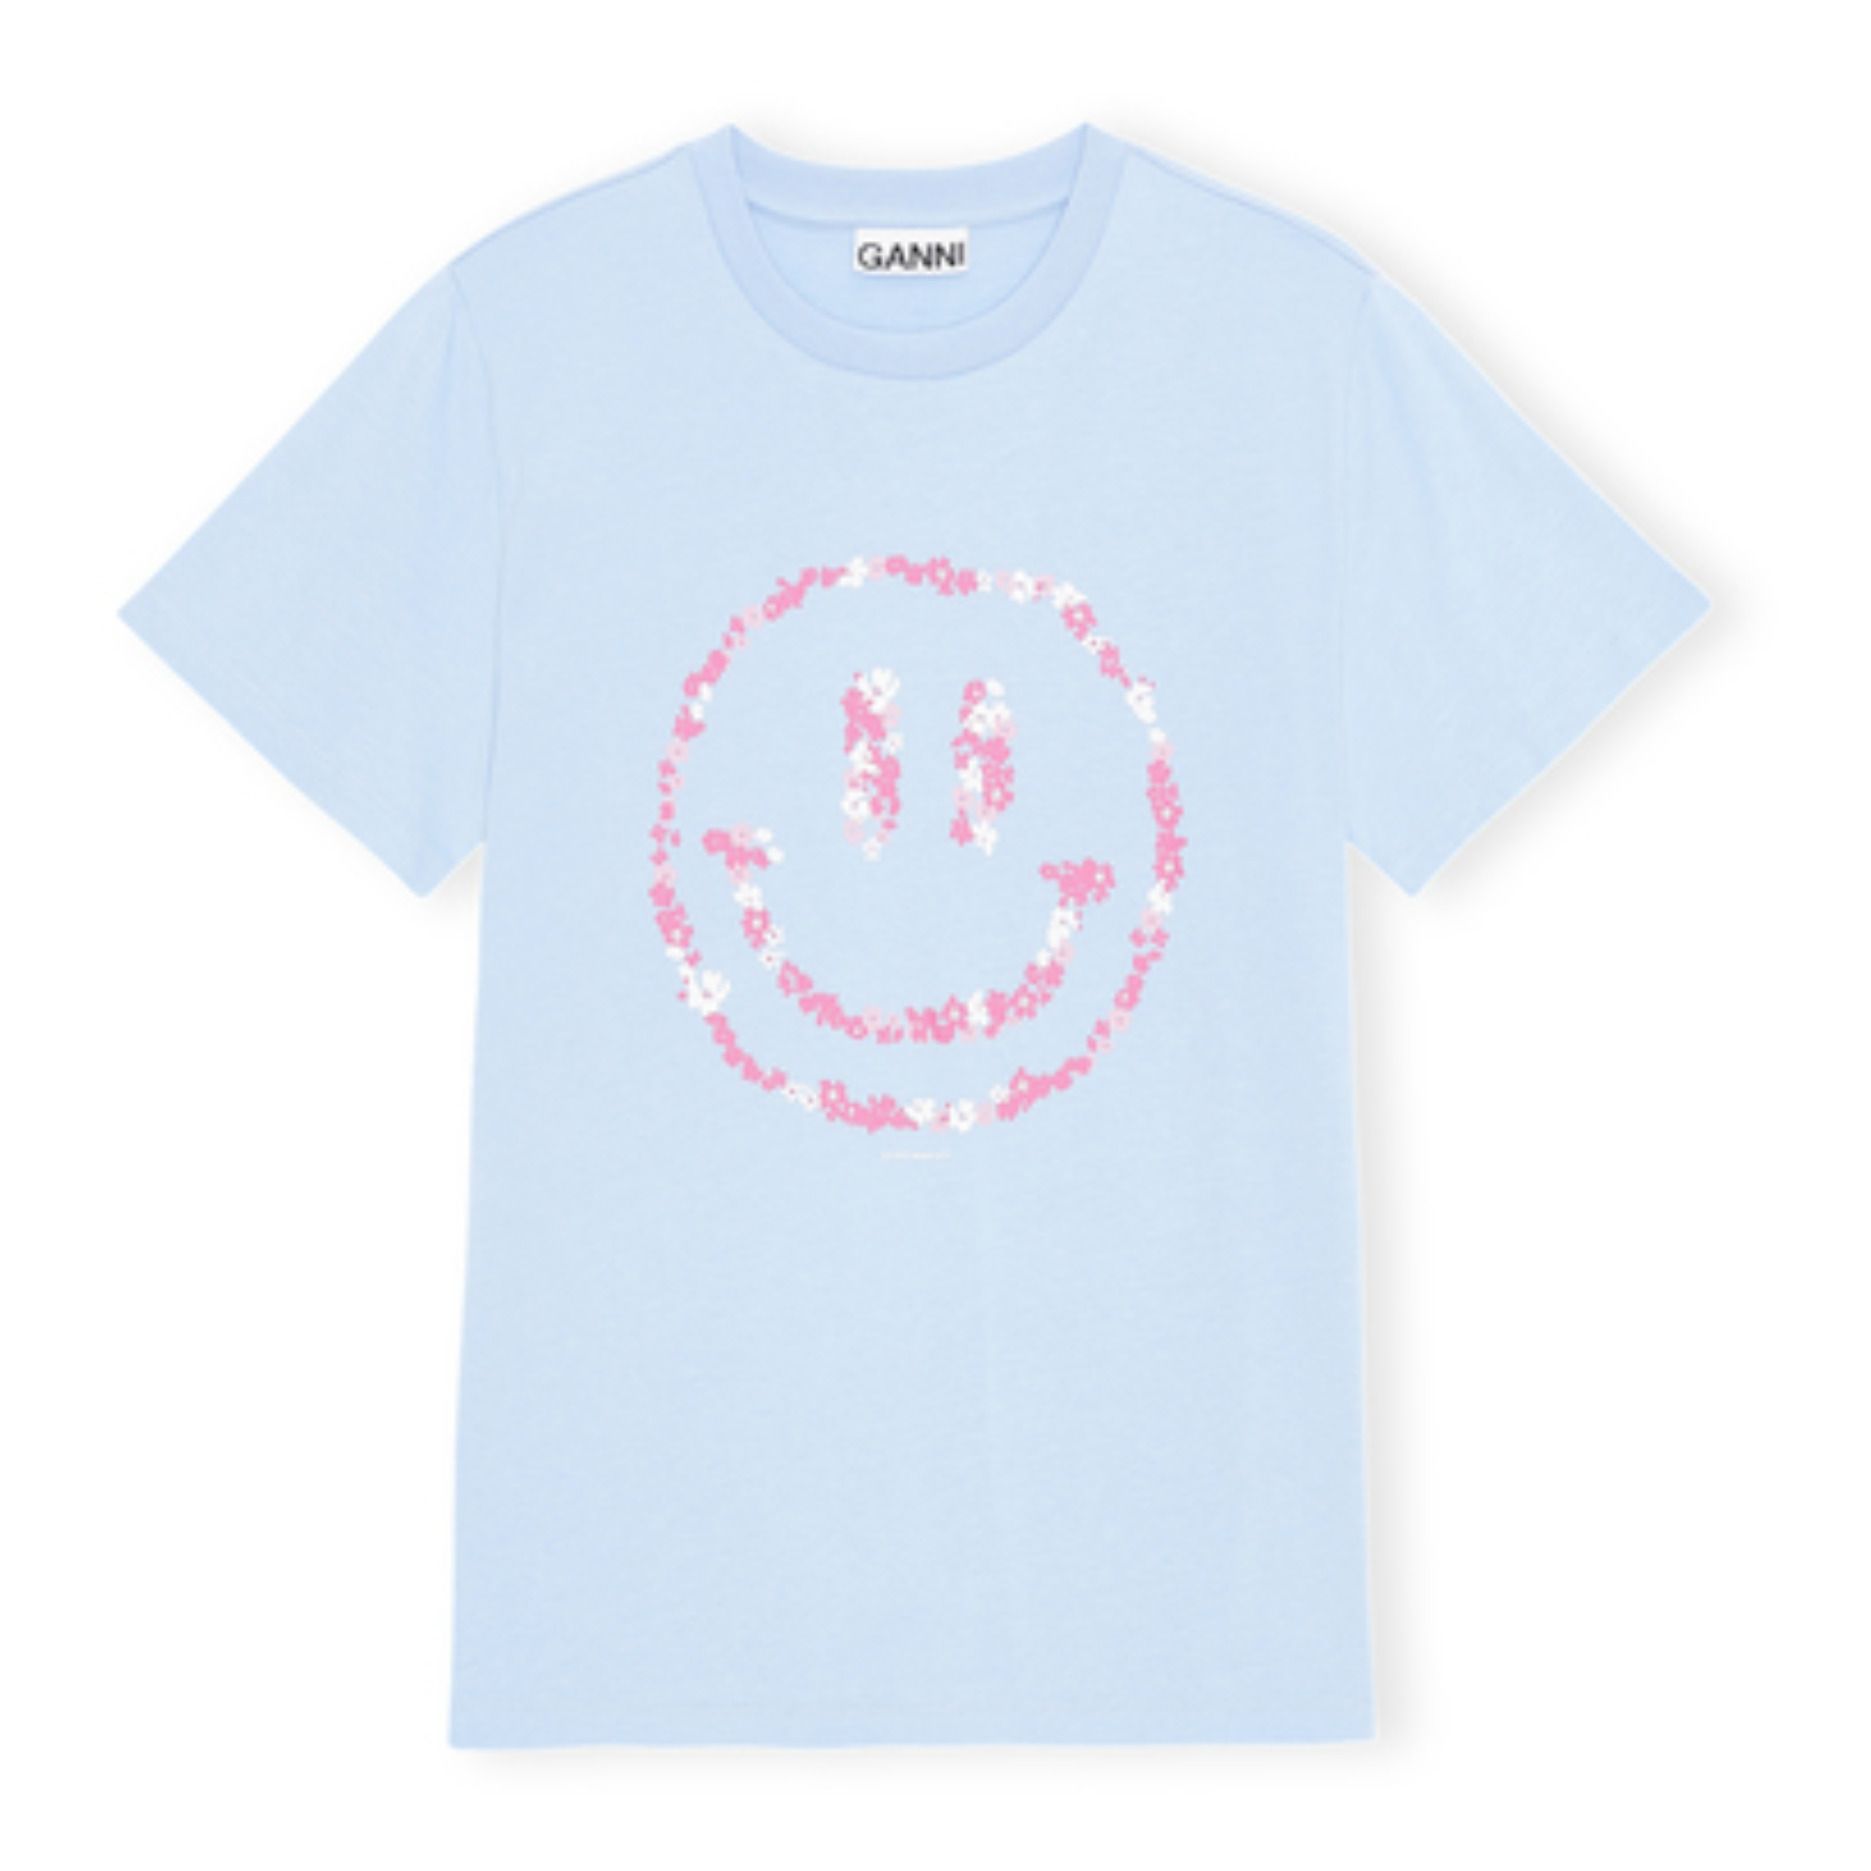 Ganni - T-shirt Smiley Coton Bio - Femme - Bleu ciel